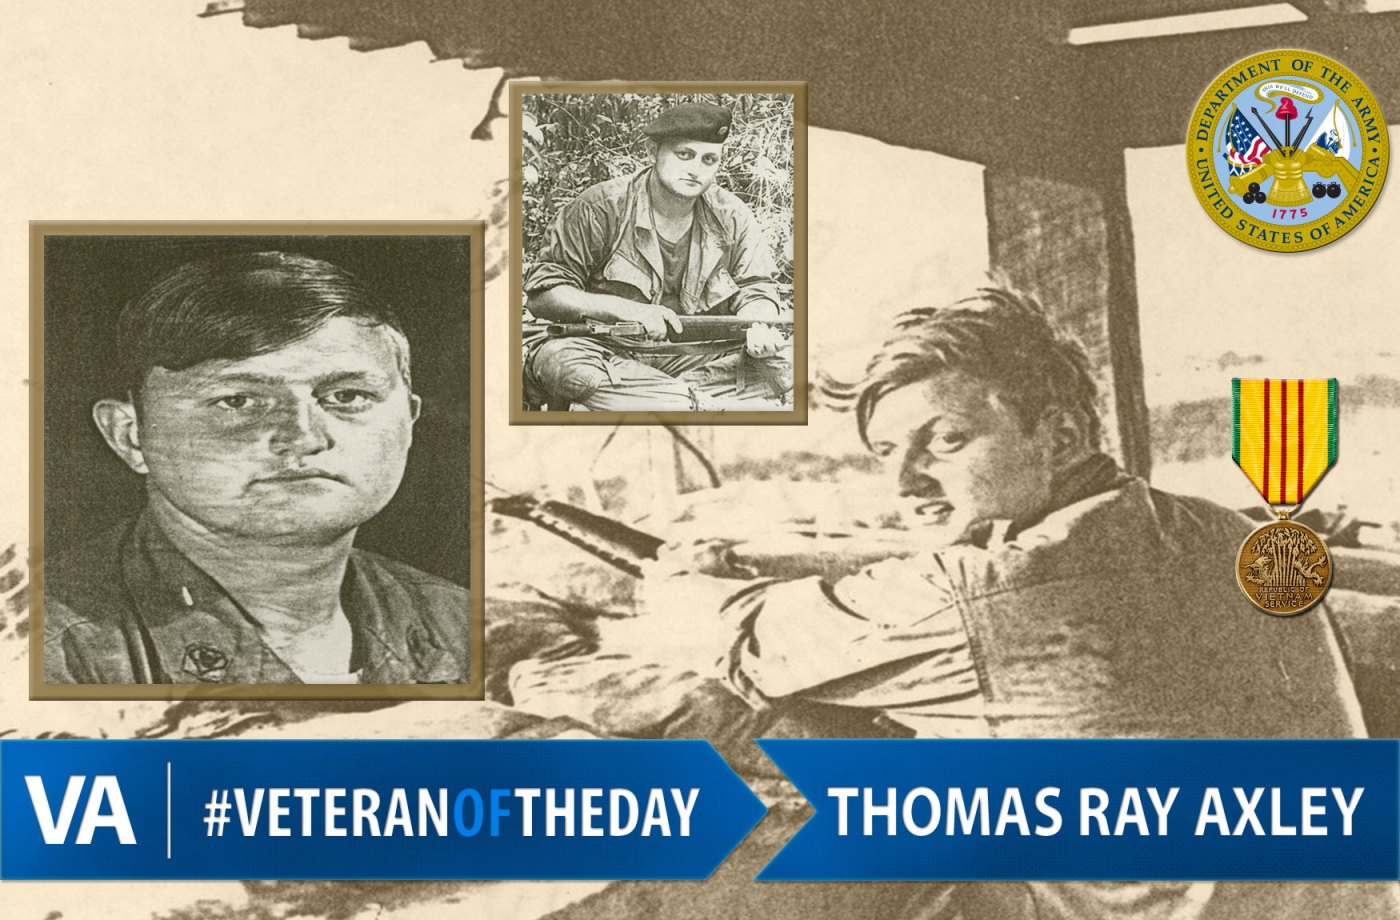 Veteran of the Day Thomas Ray Axley